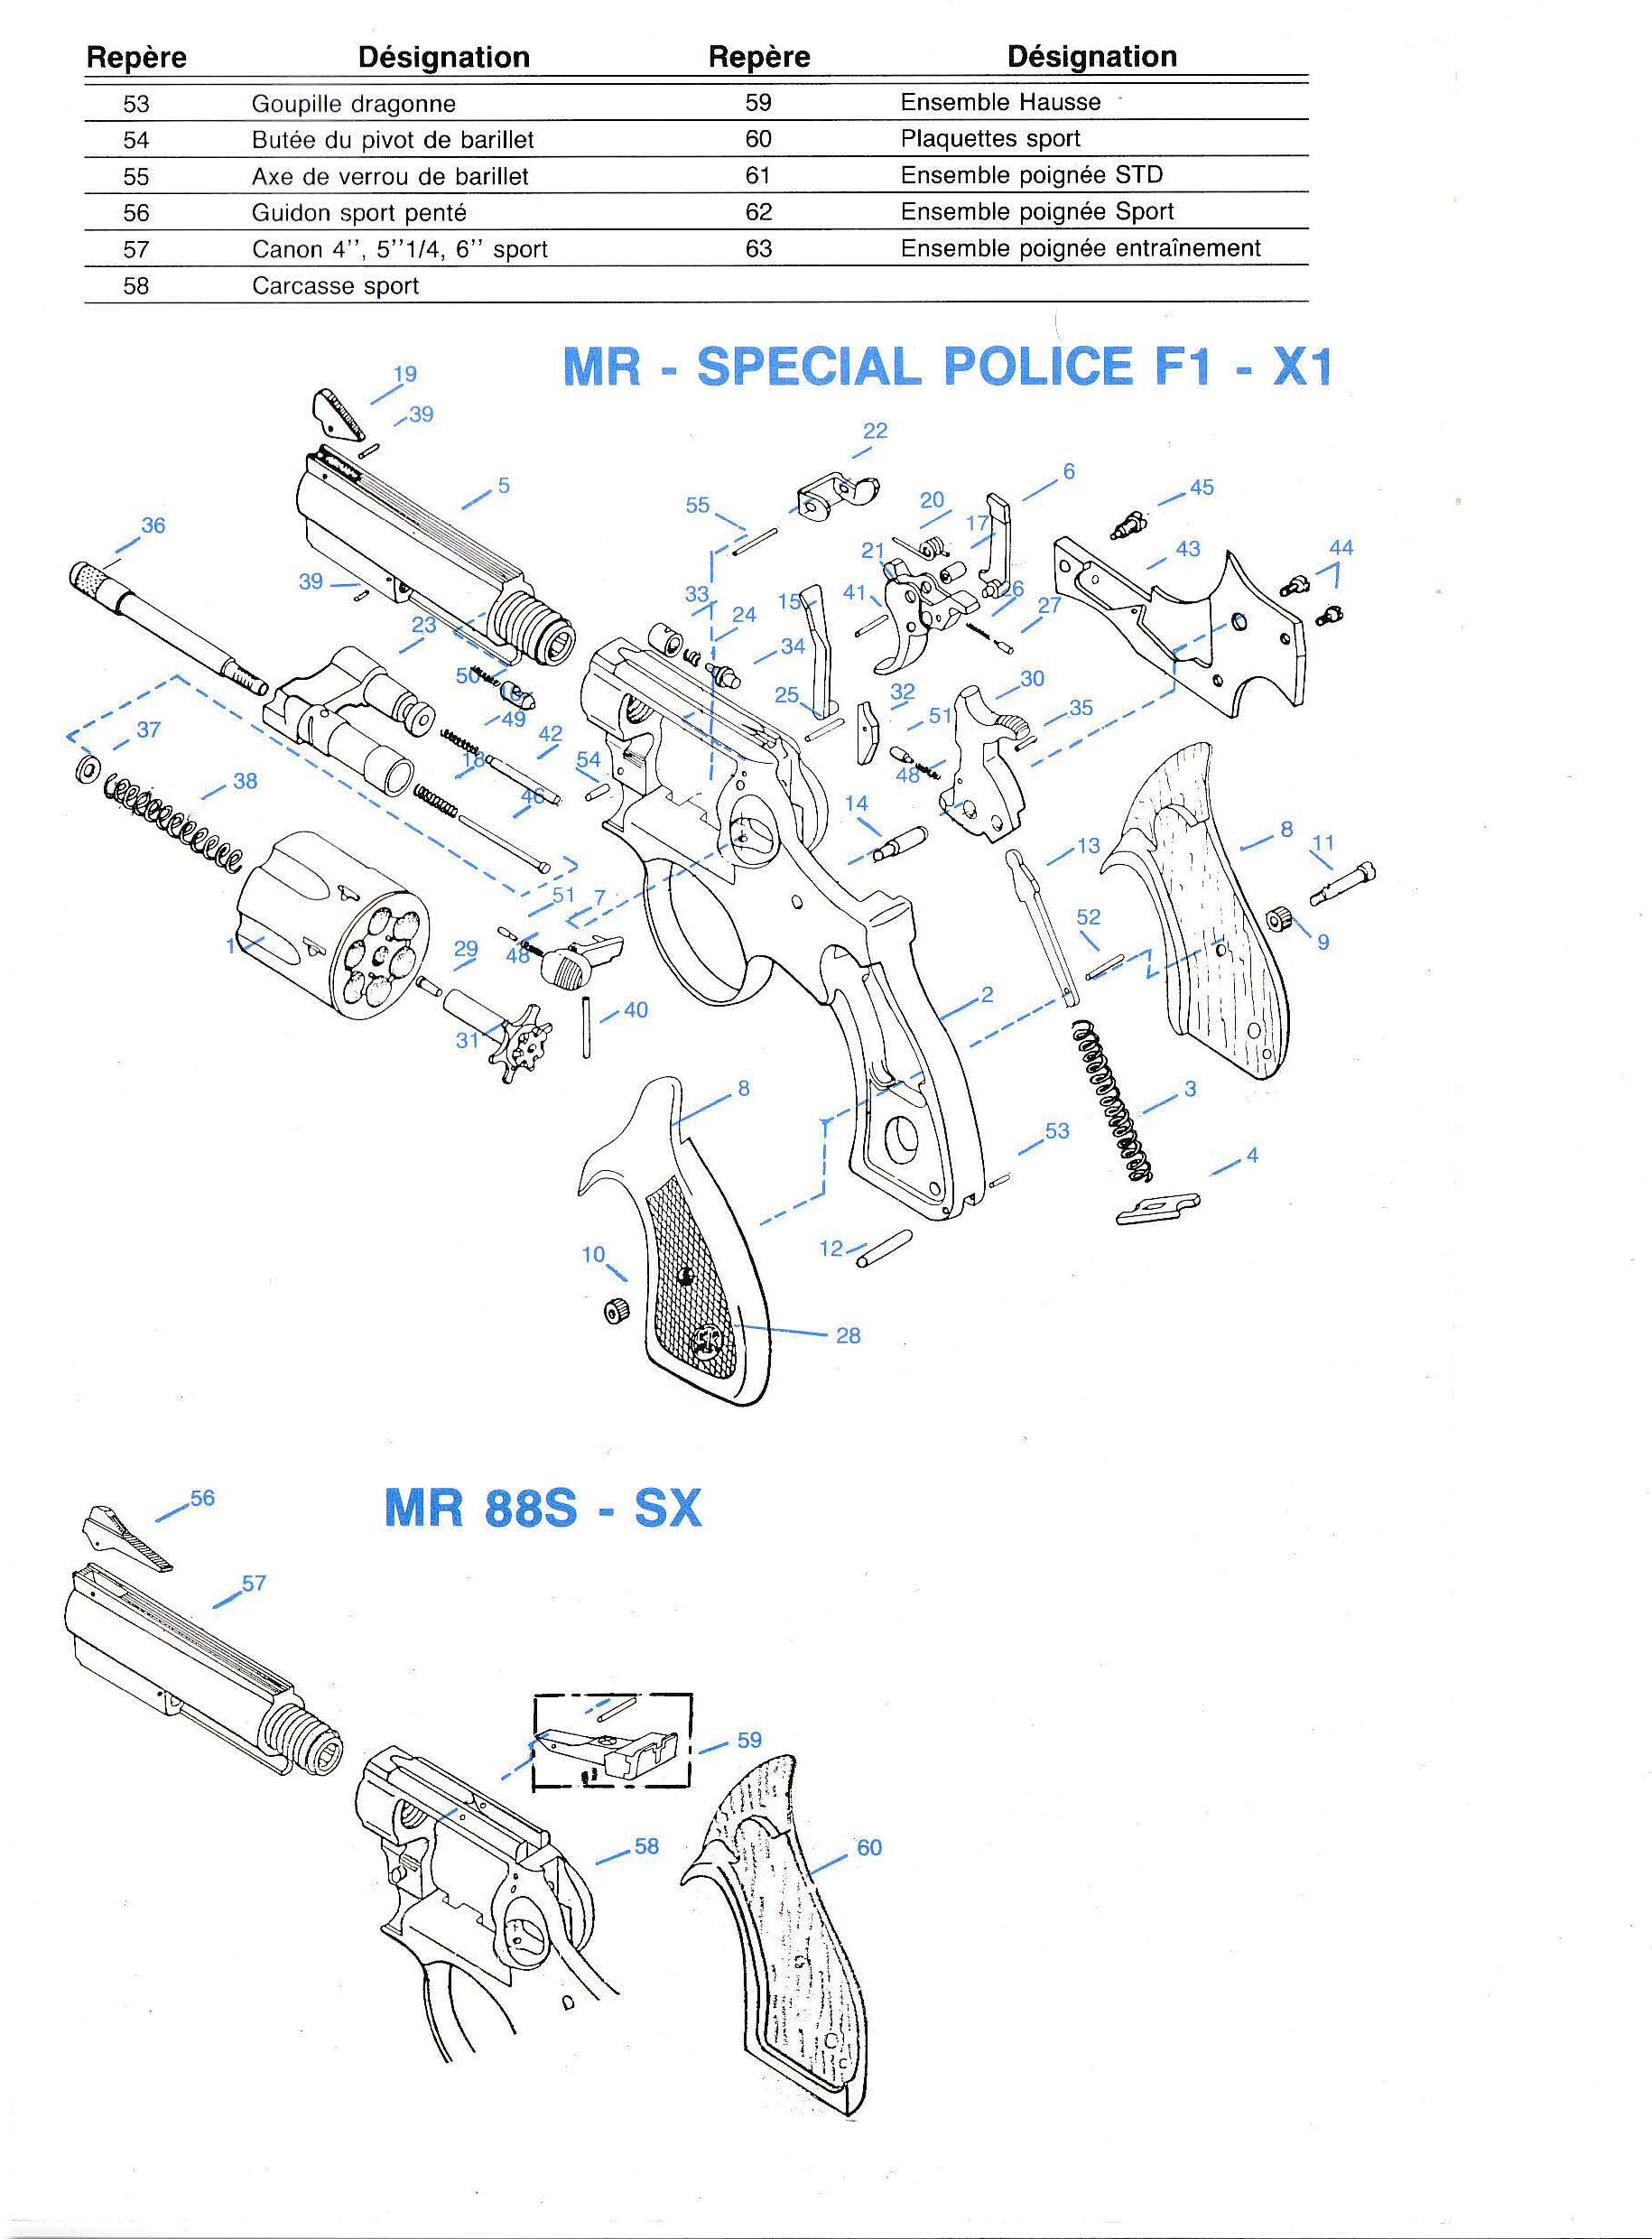 Manurhin MR88 - FX - Police calibre 38SP - 357 Magnum Pièces détachées - éclaté